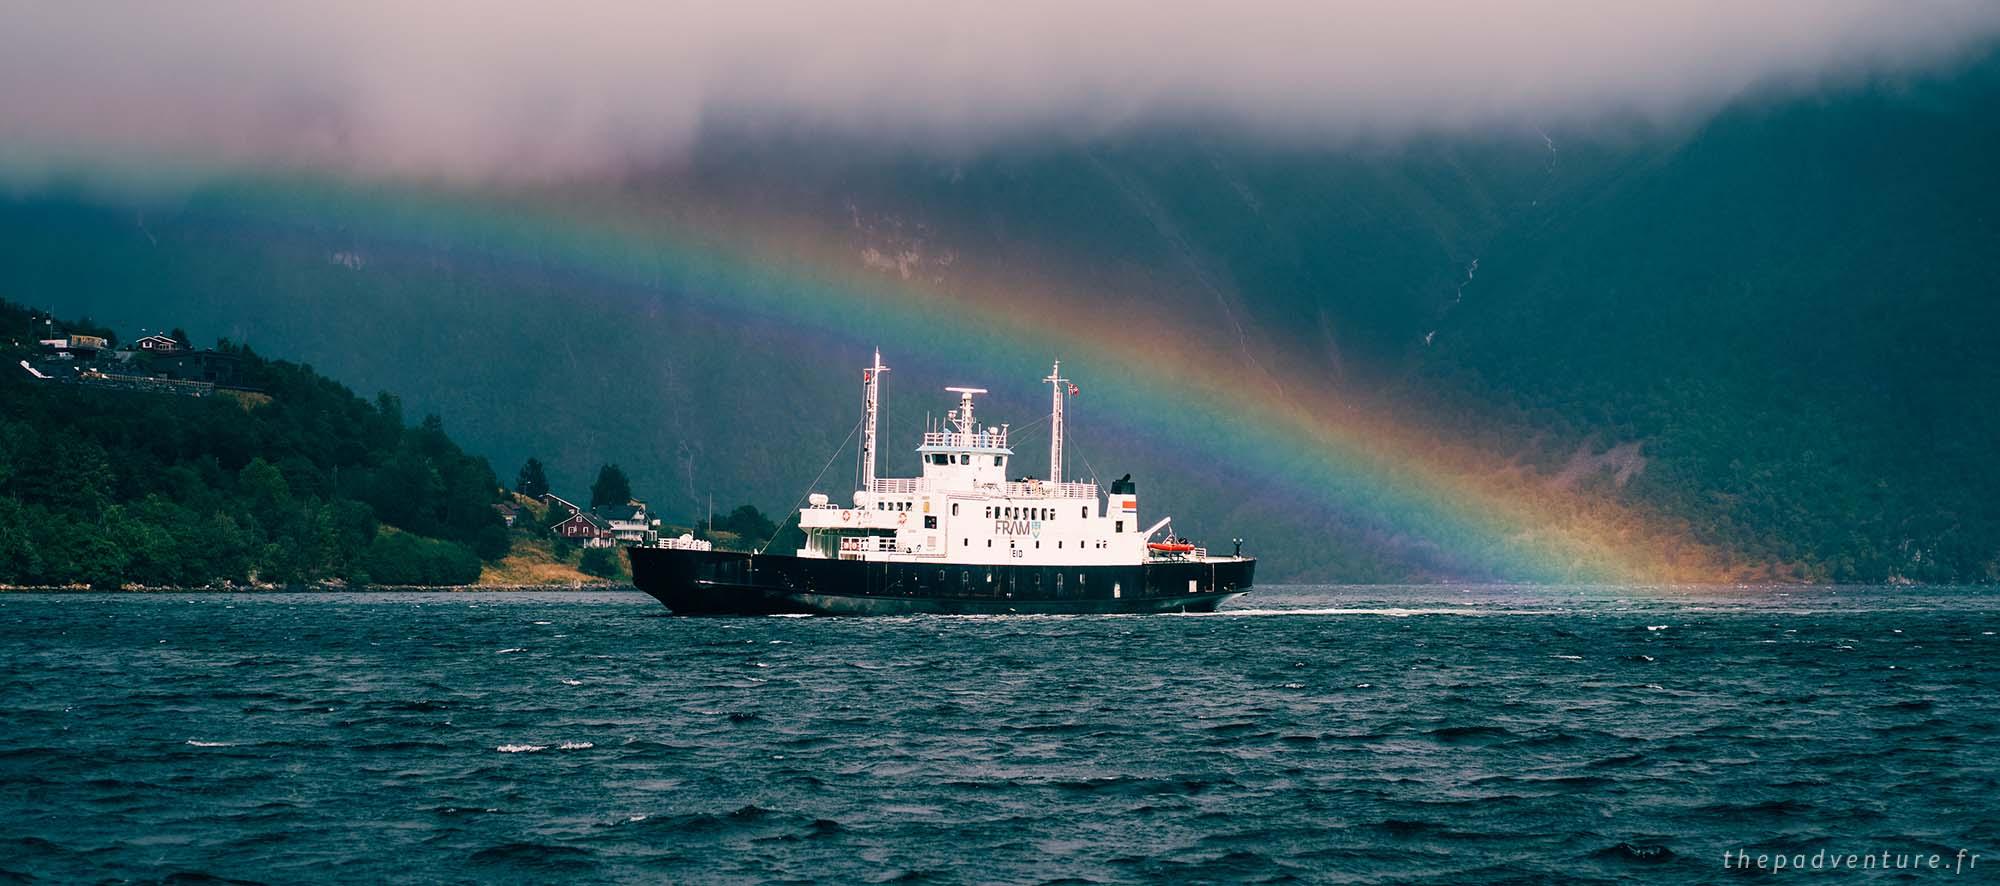 Prendre le ferry en norvege prix